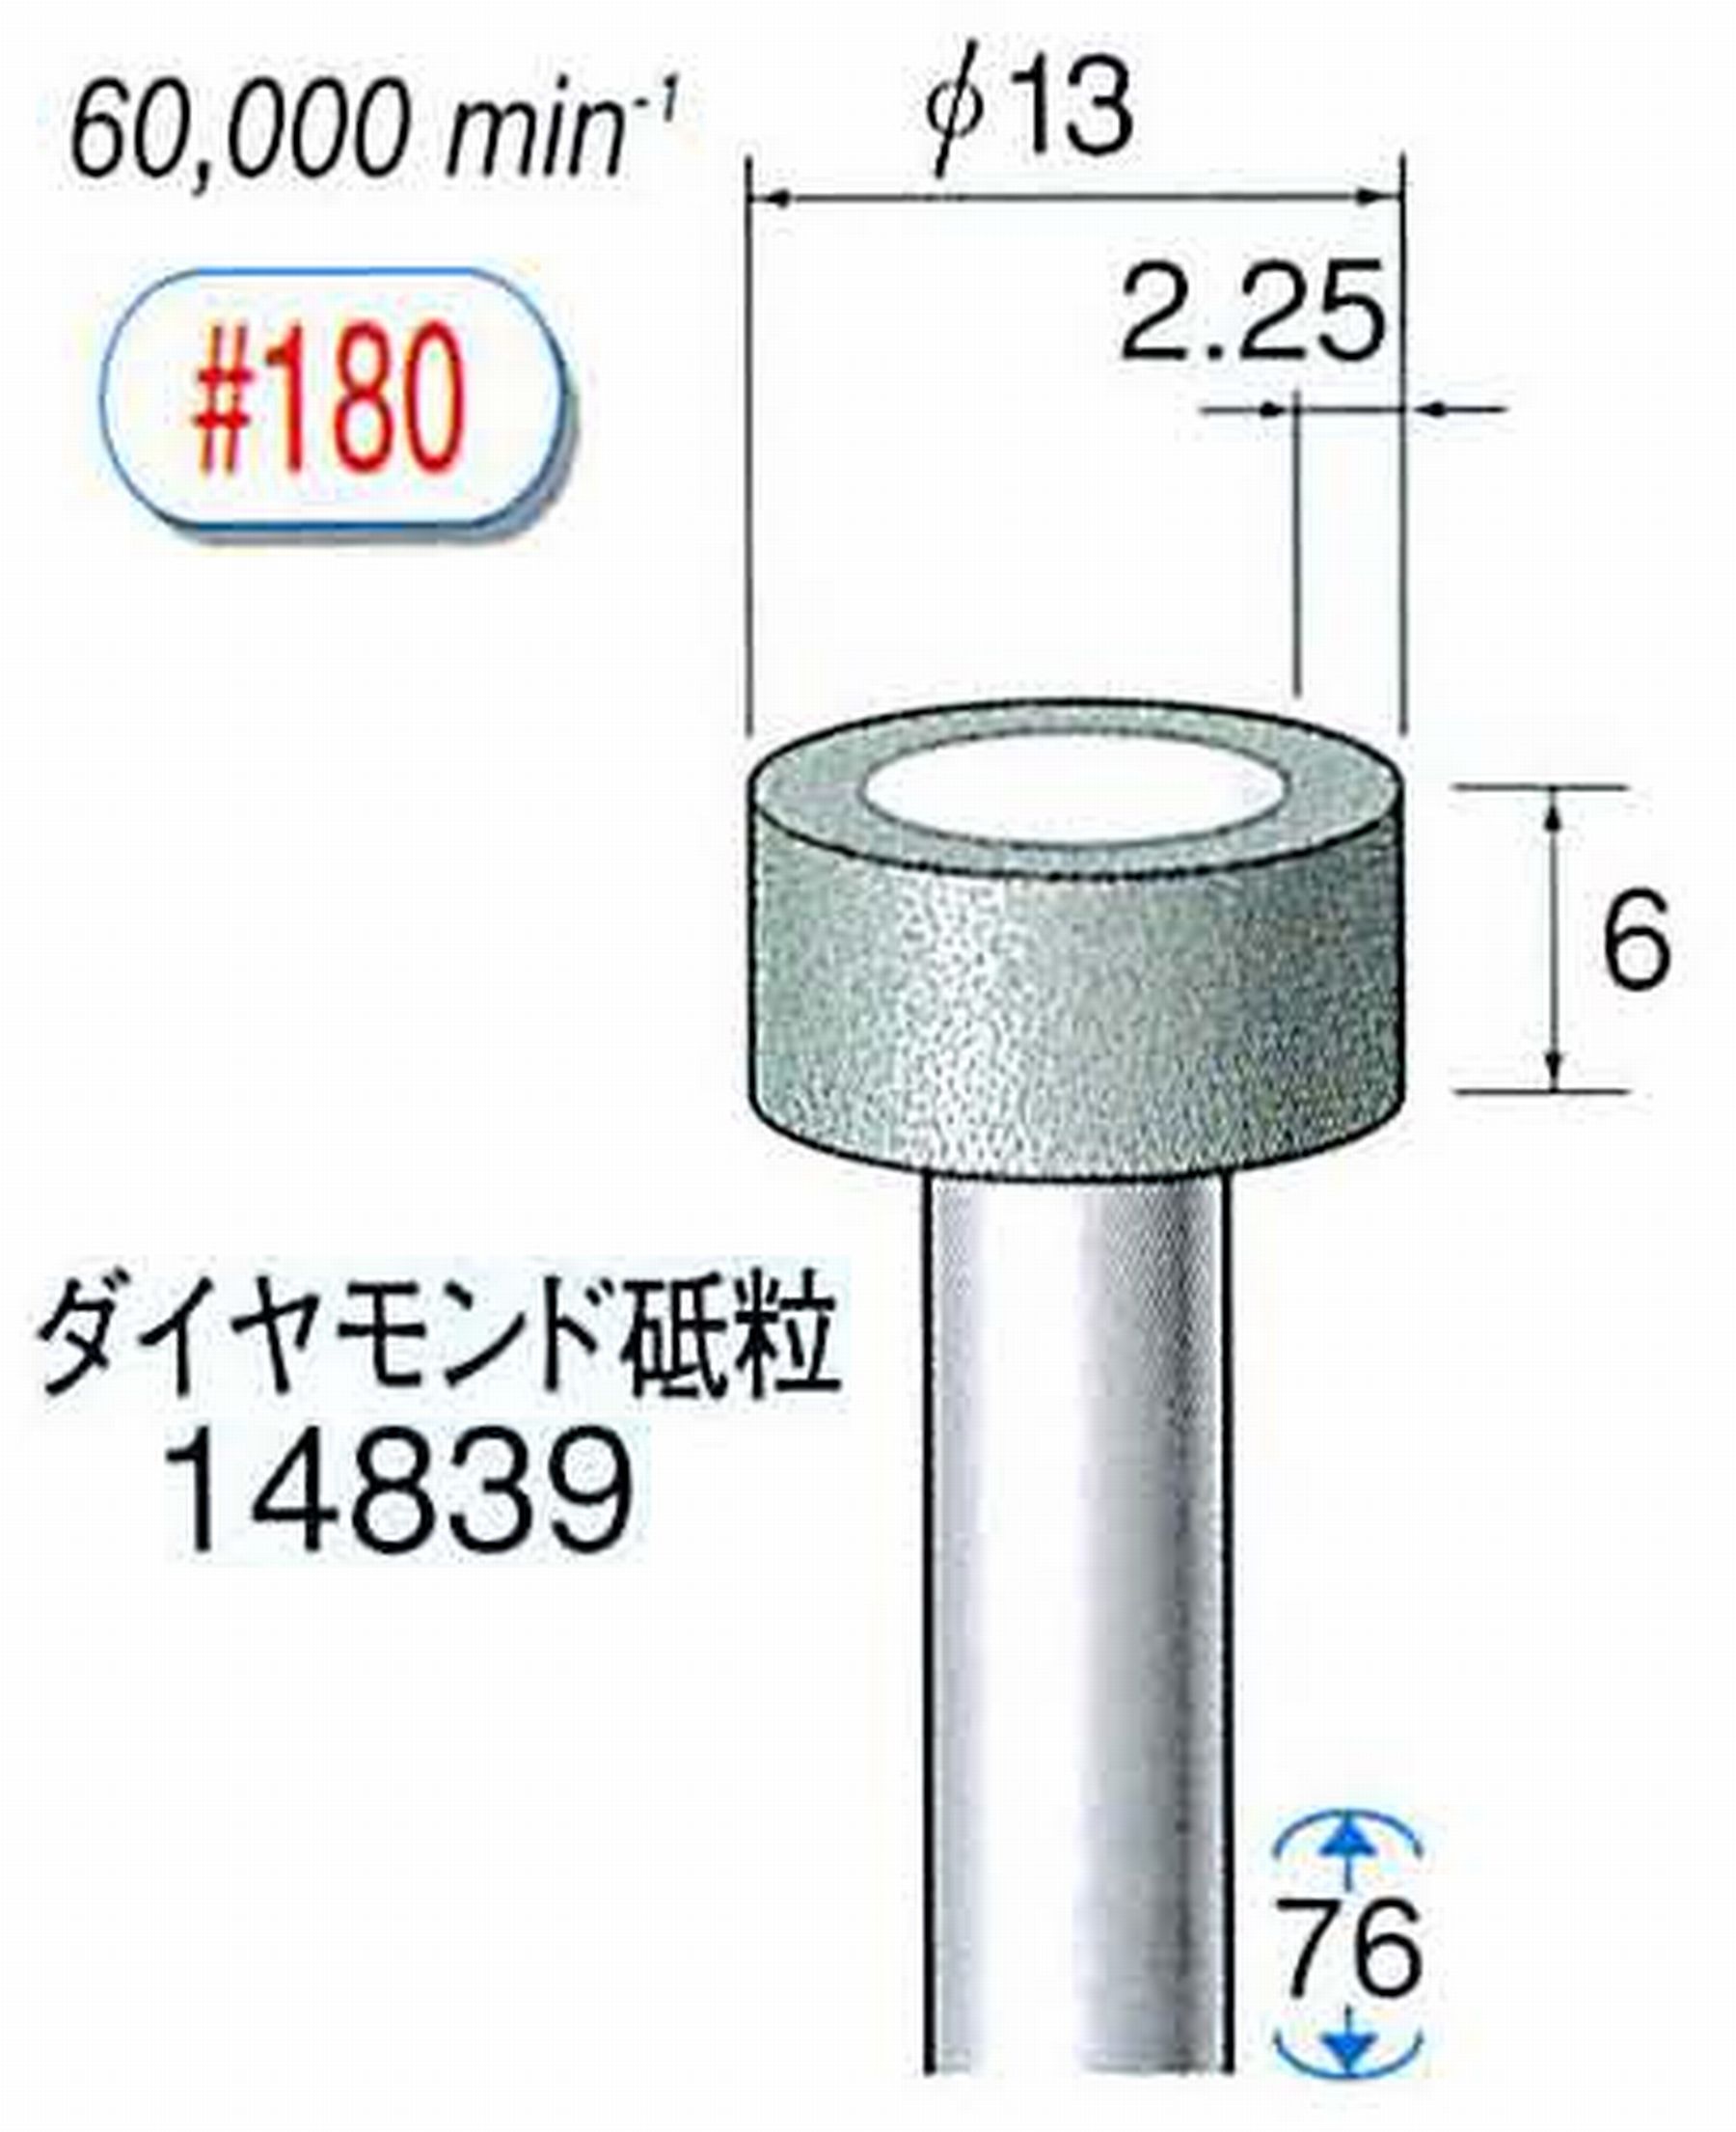 ナカニシ/NAKANISHI ビトリファイドダイヤモンド砥石 ダイヤモンド砥粒 軸径(シャンク)φ6.0mm 14839